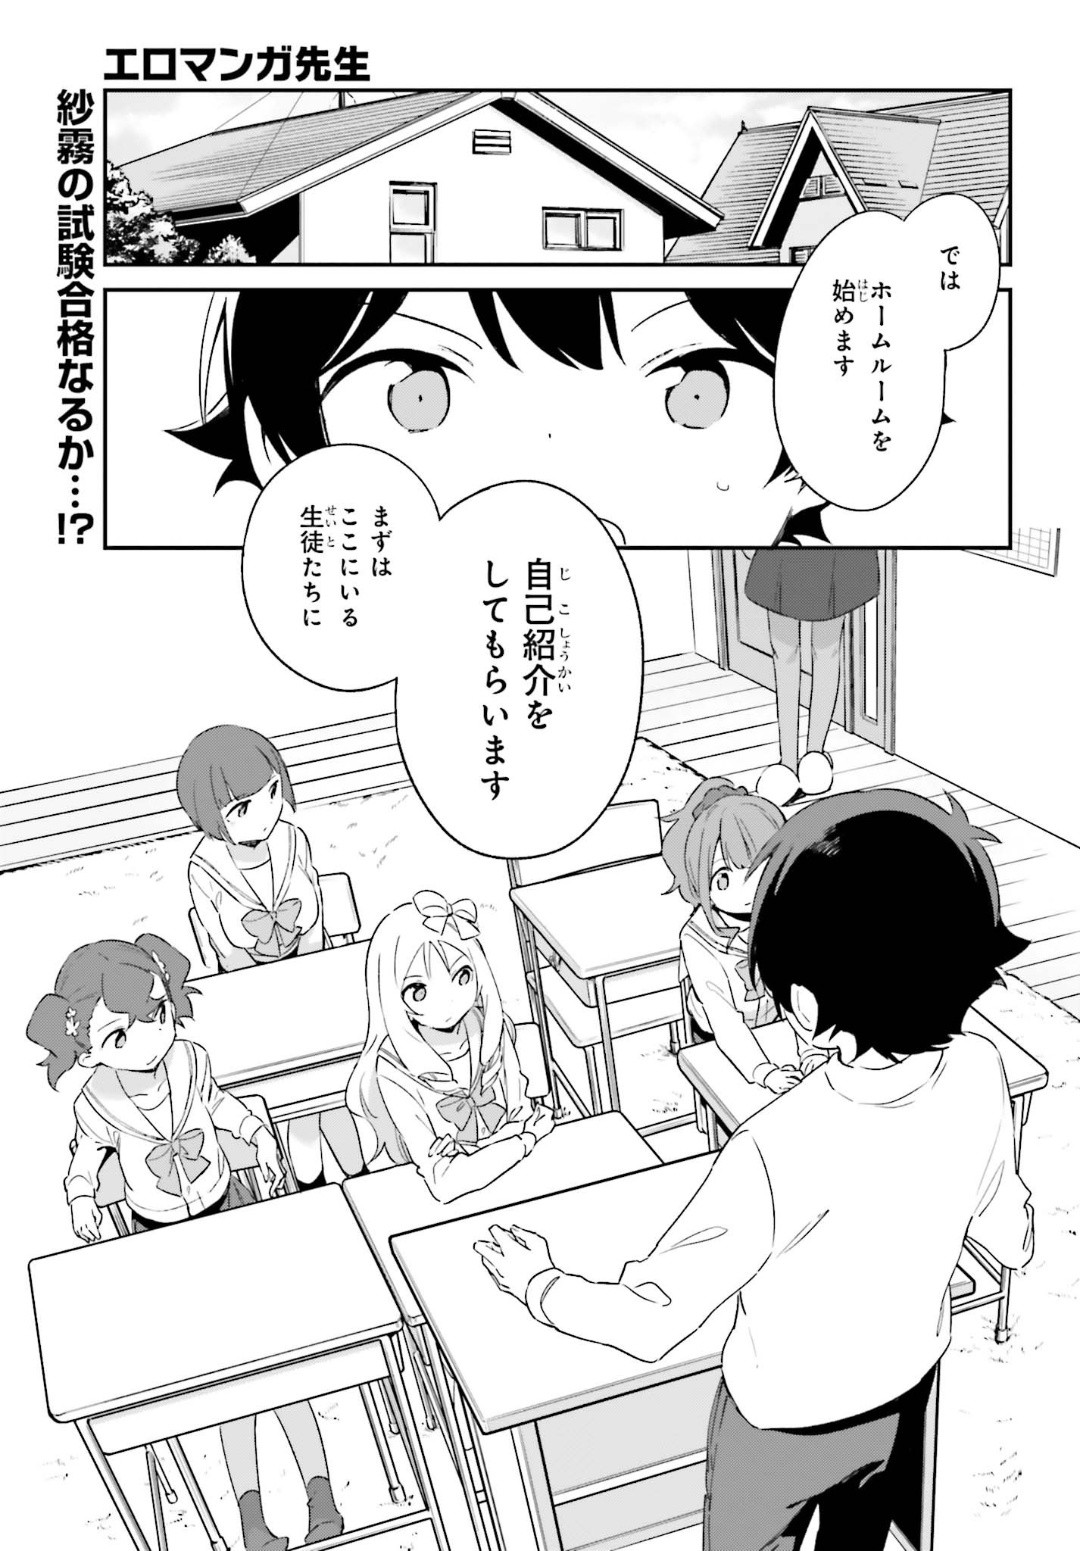 Ero Manga Sensei - Chapter 64 - Page 1